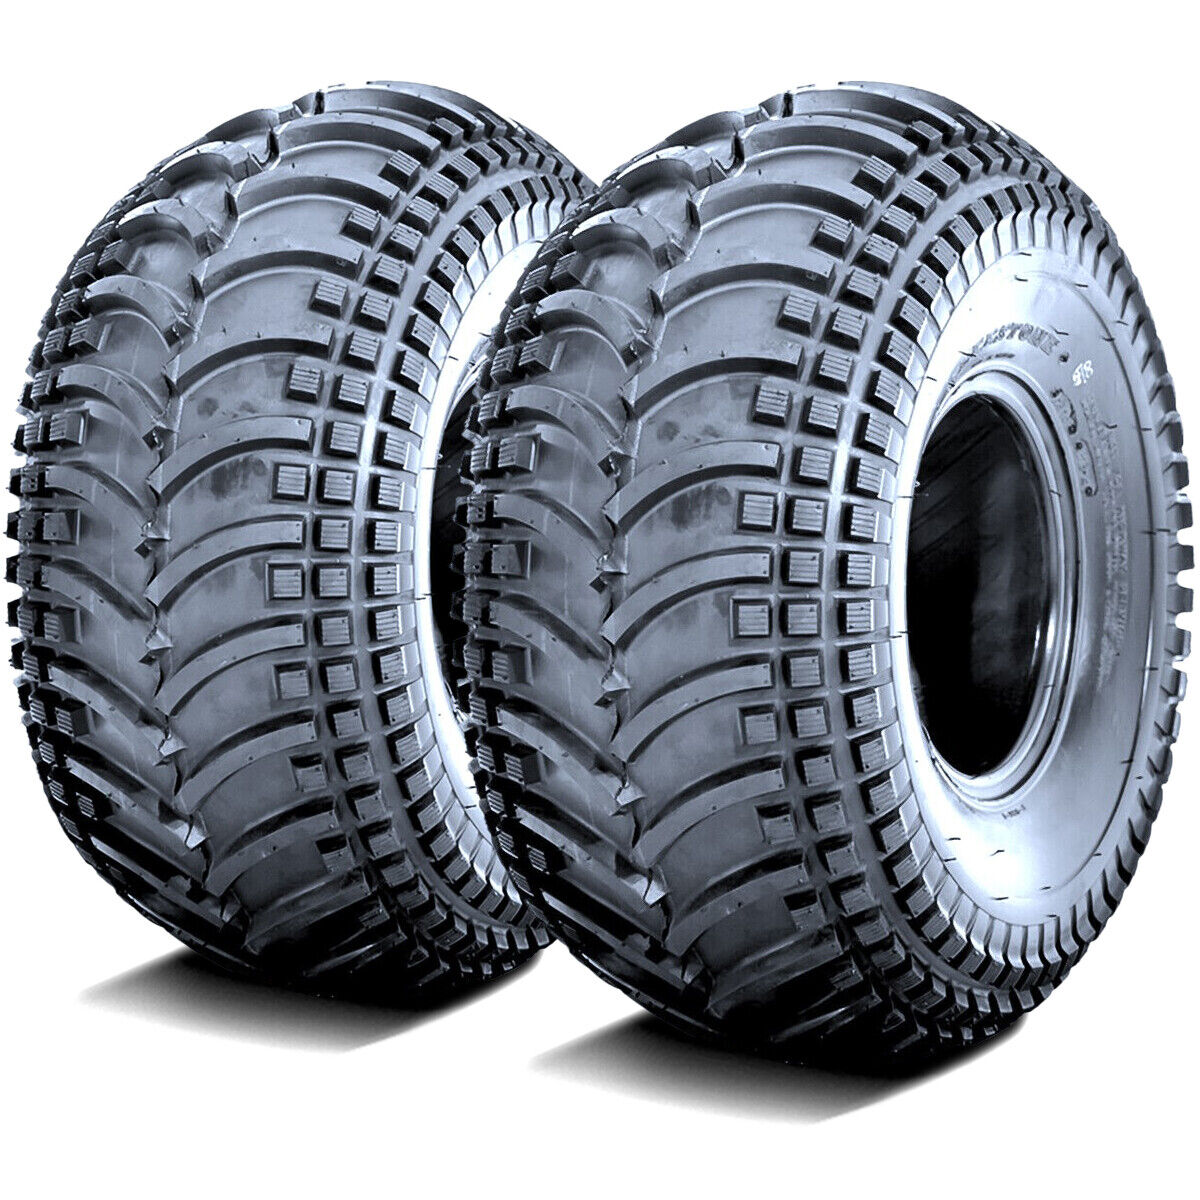 2 Tires Deestone D930 24x10.00-11 24x10-11 24x10x11 43F 4 Ply MT M/T Mud ATV UTV